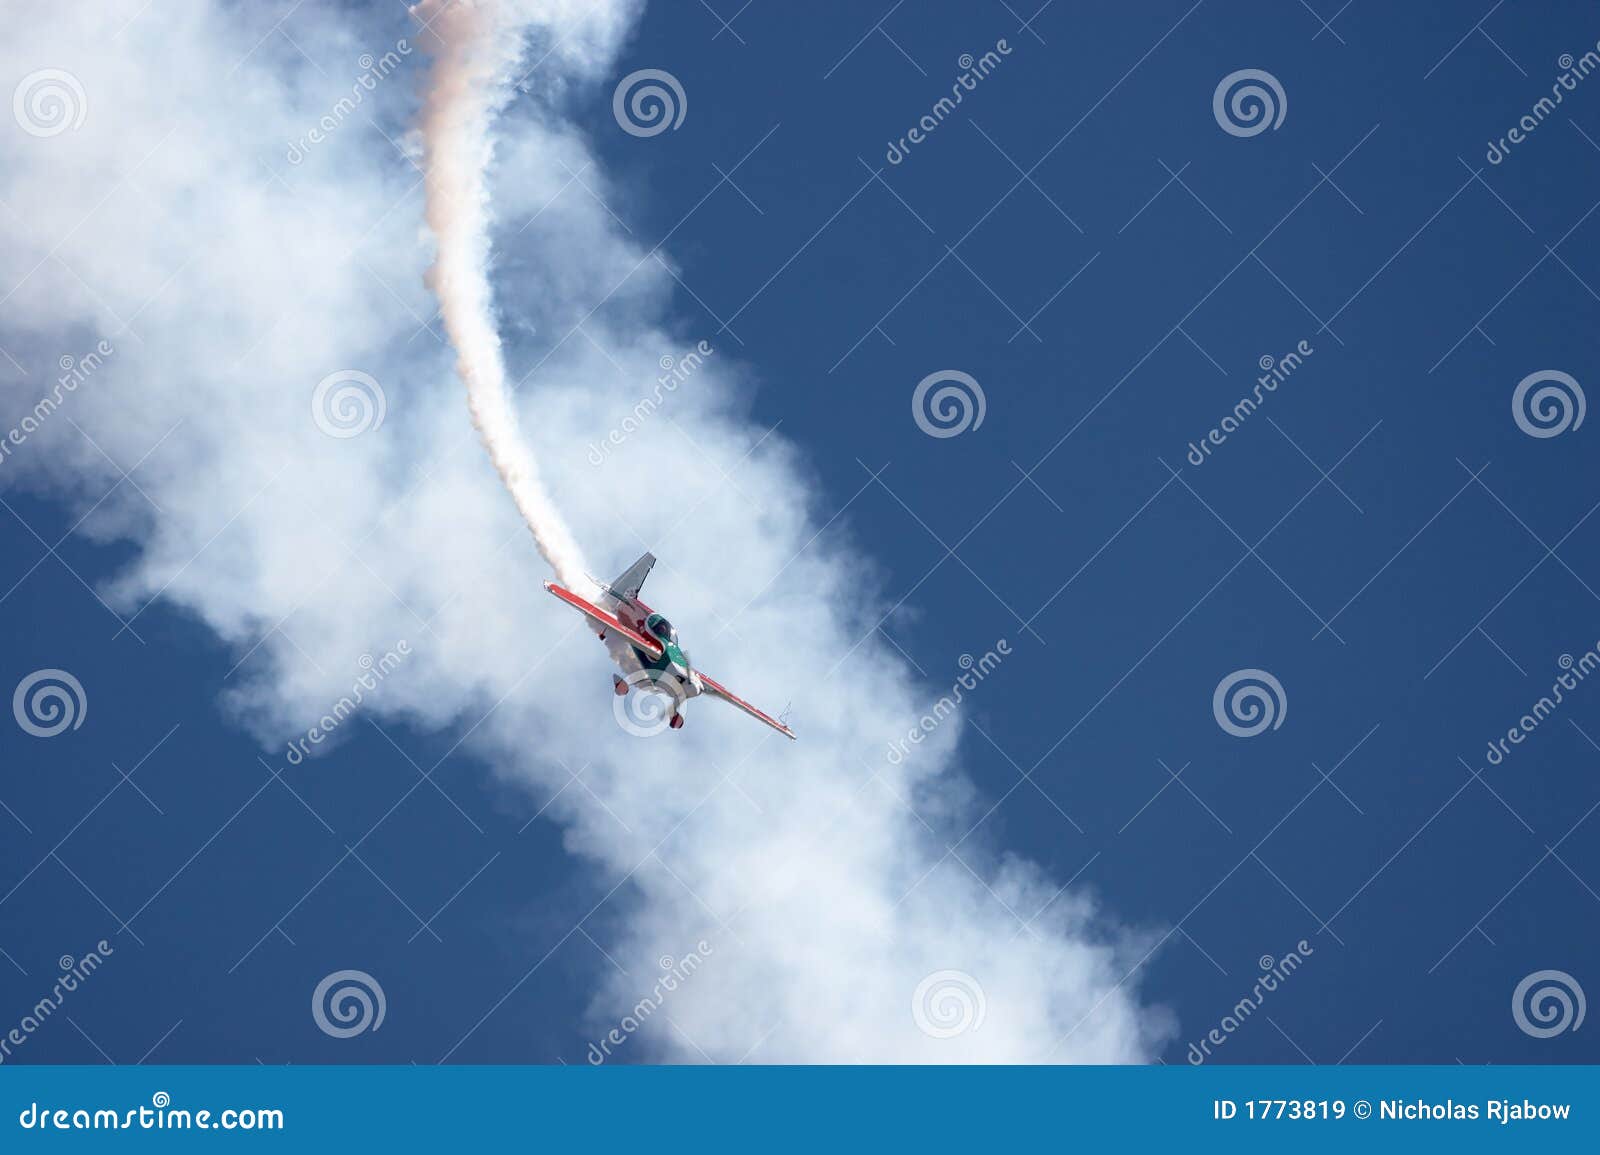 aerial aerobatics